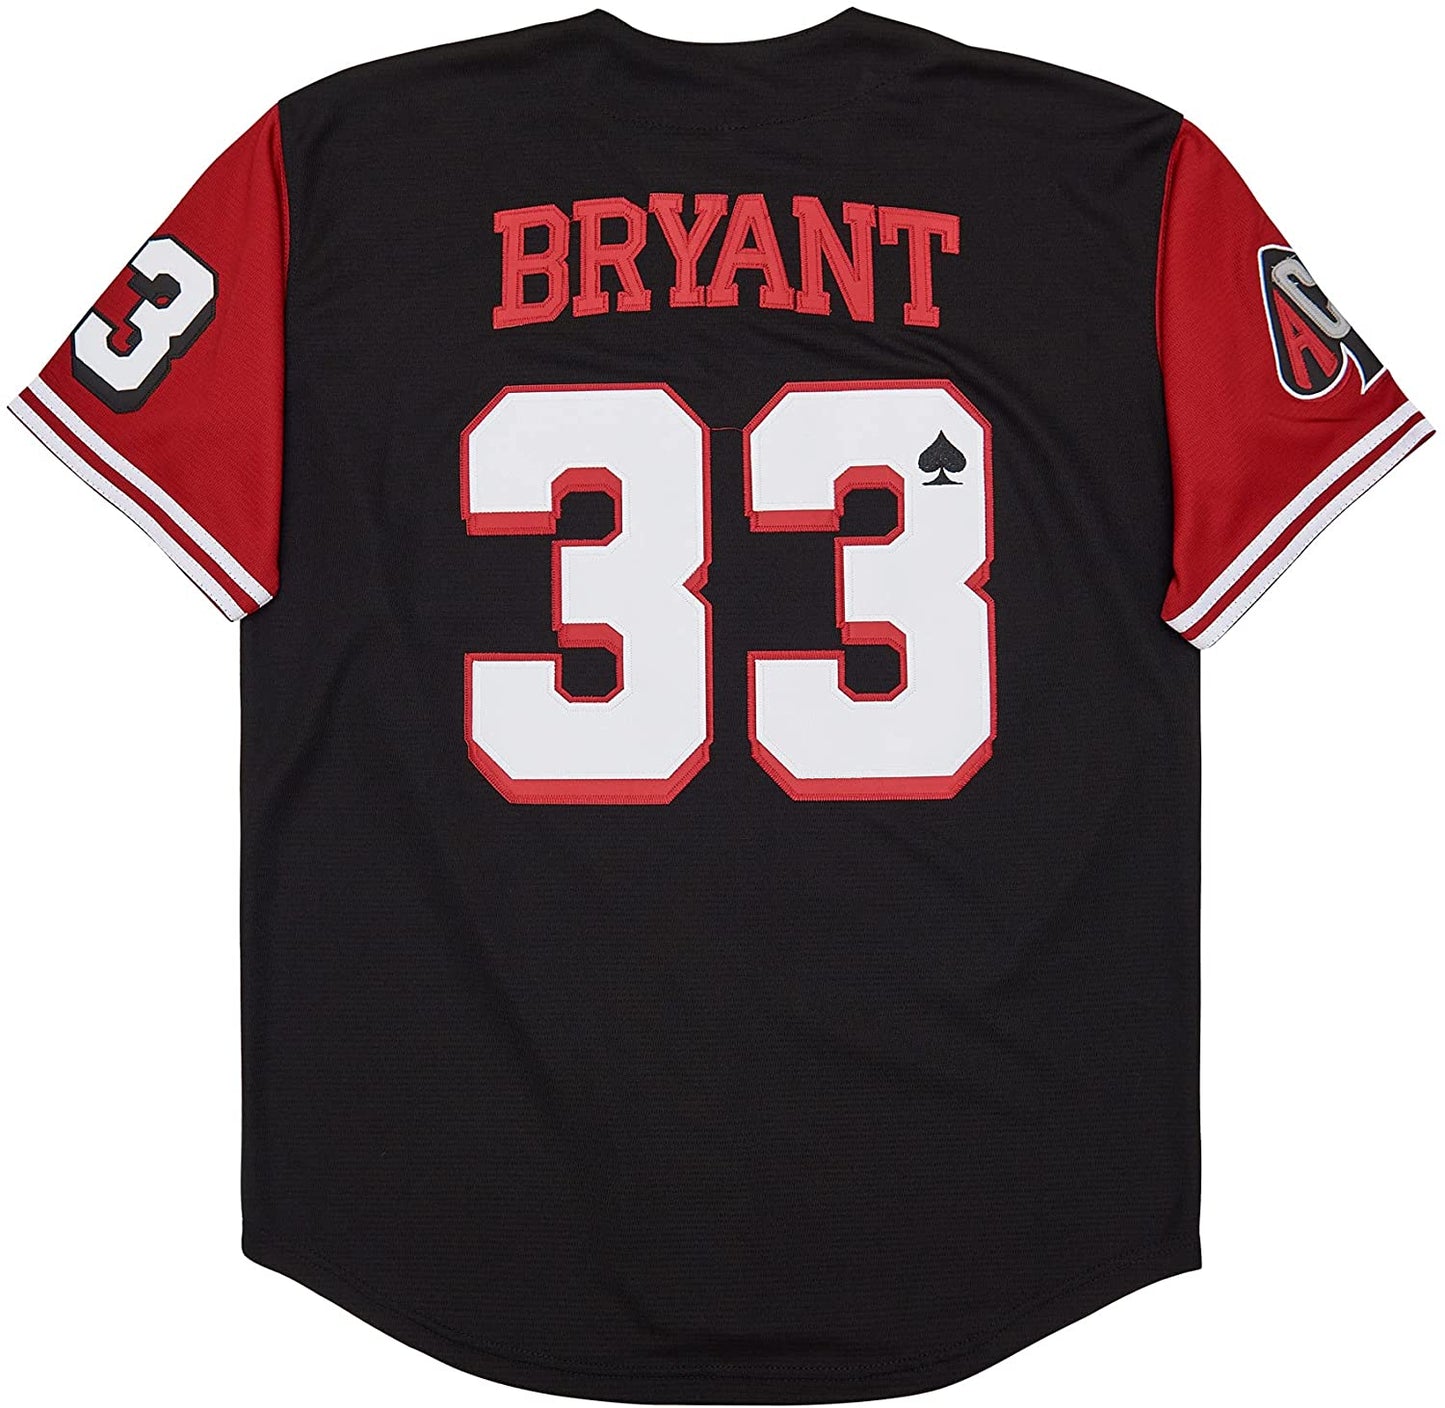 Kobe Bryant #33 Lower Merion Baseball Jersey